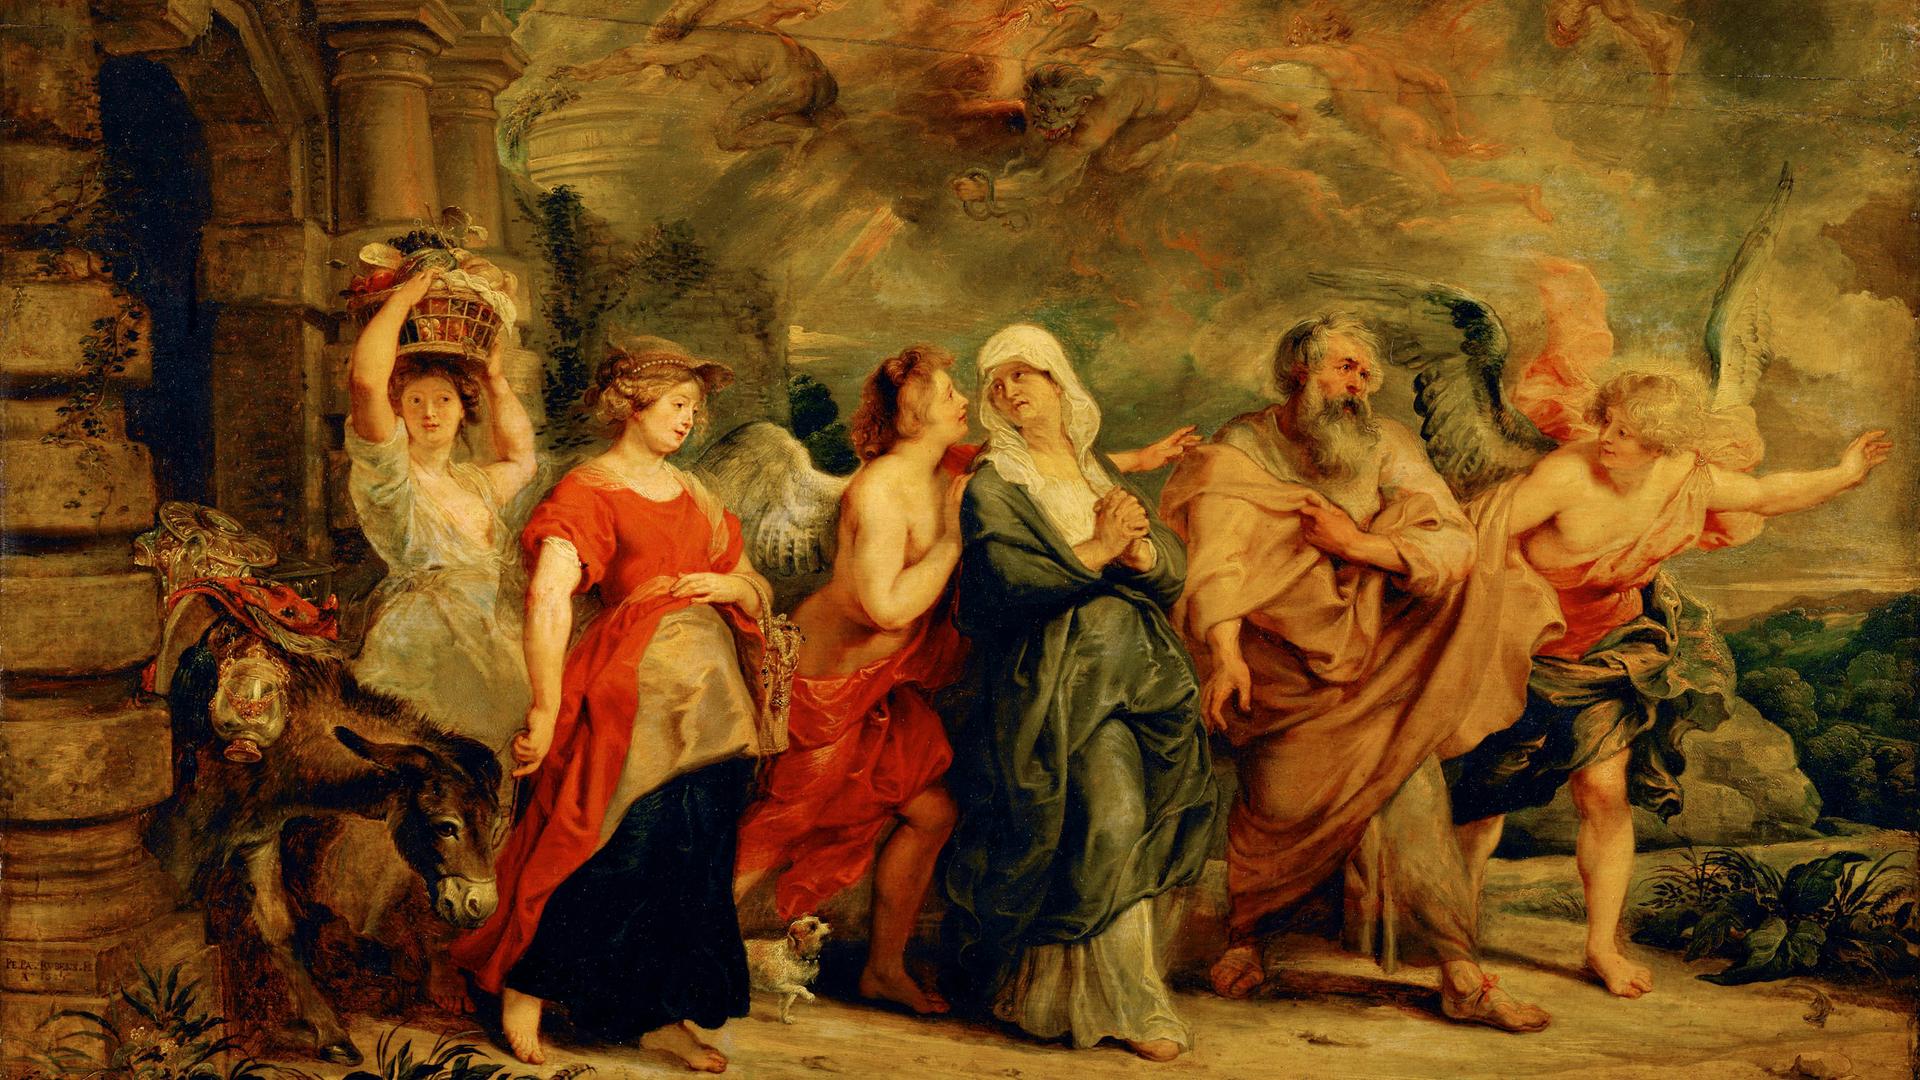 Ein Engel führt Lot und seine Familie aus der Stadt Sodom, über der im Hintergrund Dämonen in den Wolken wüten.